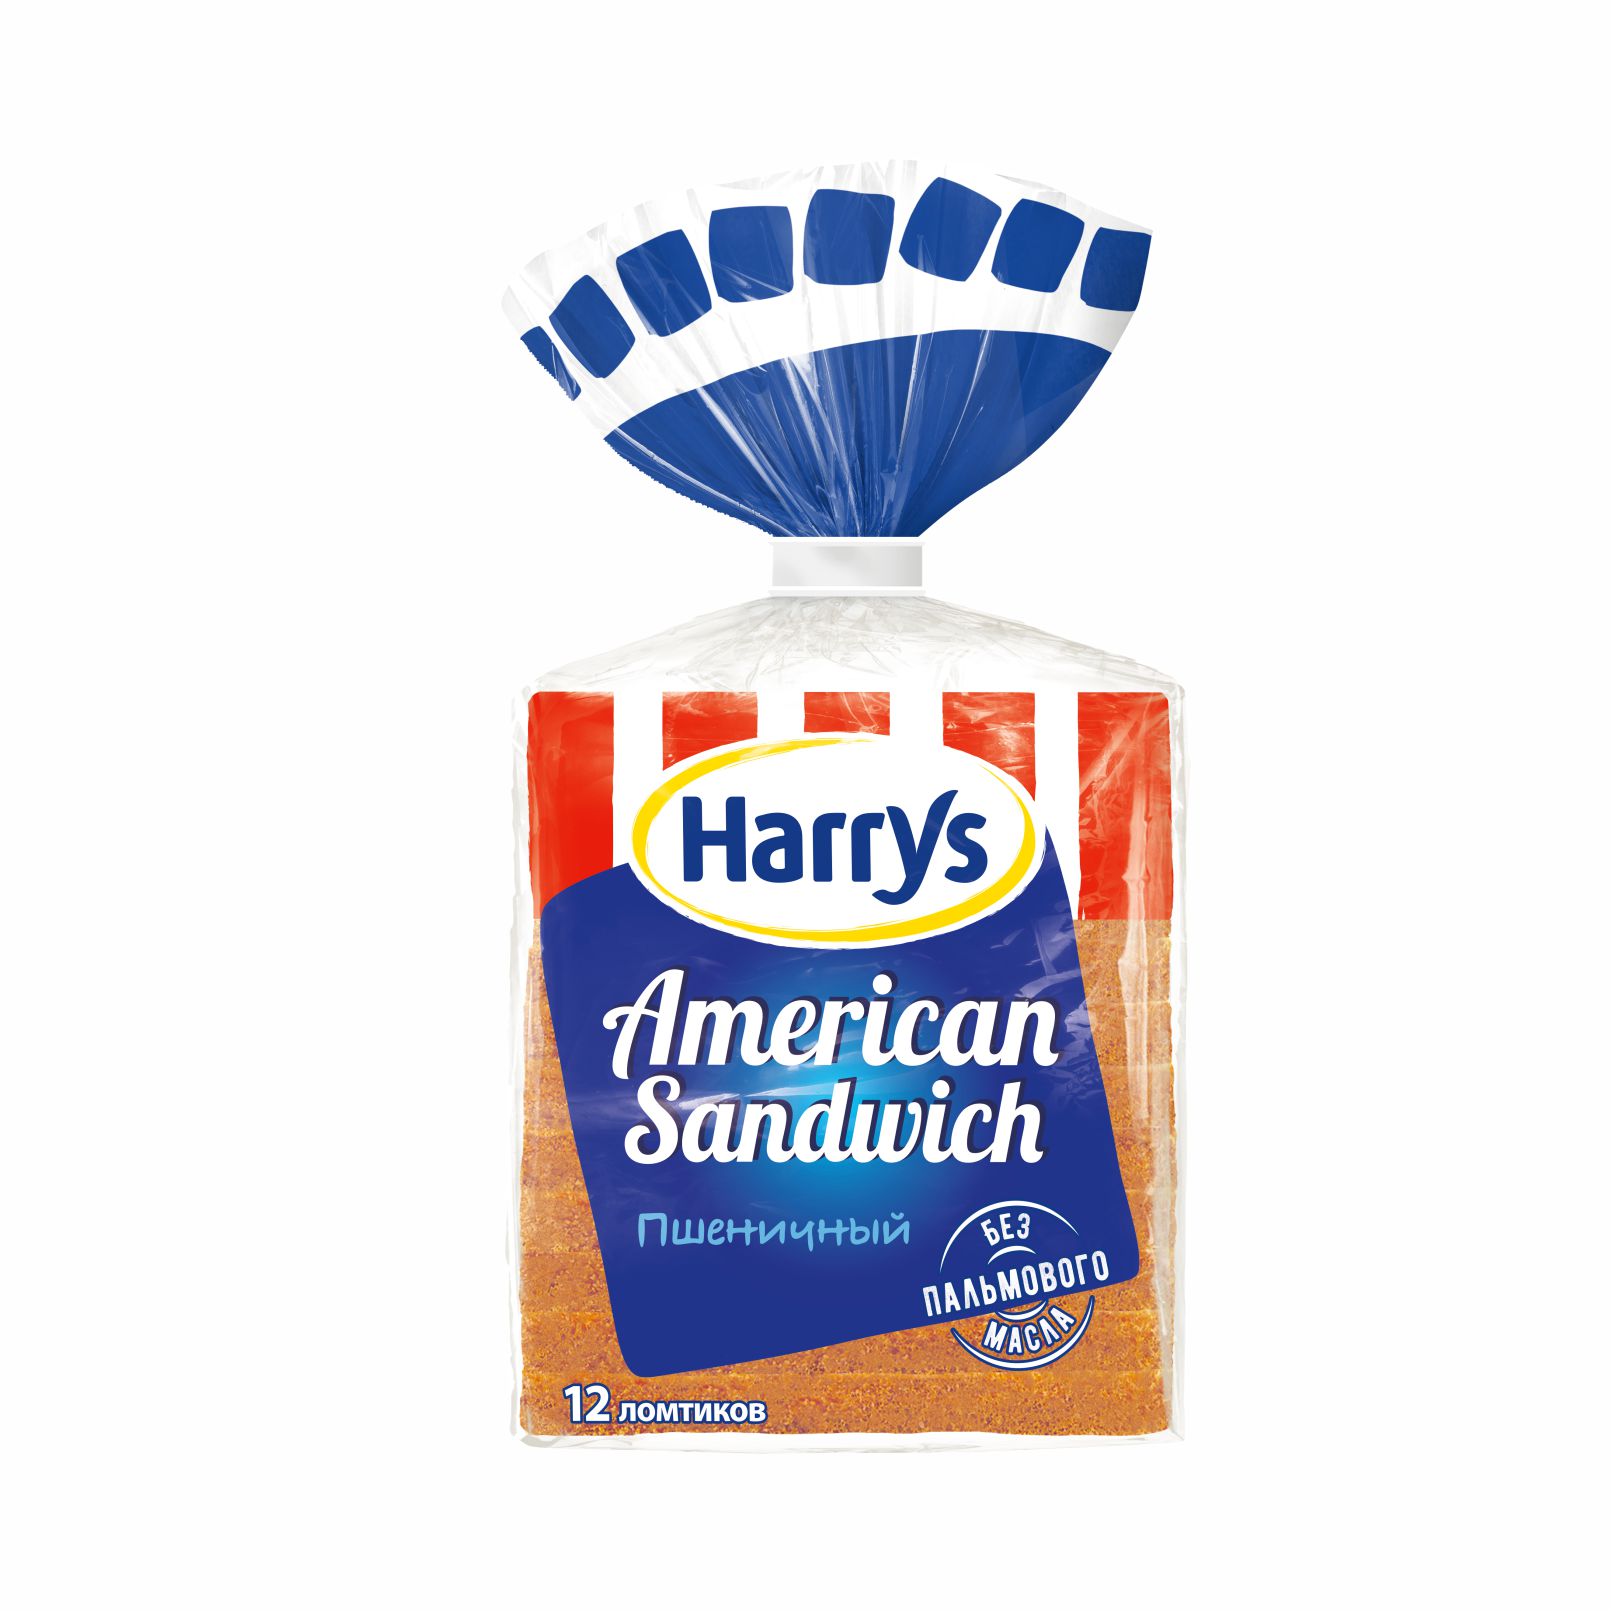 Хлеб Harrys American Sandwich 470 г булочки коломенское пшеничные с кунжутом 180 гр